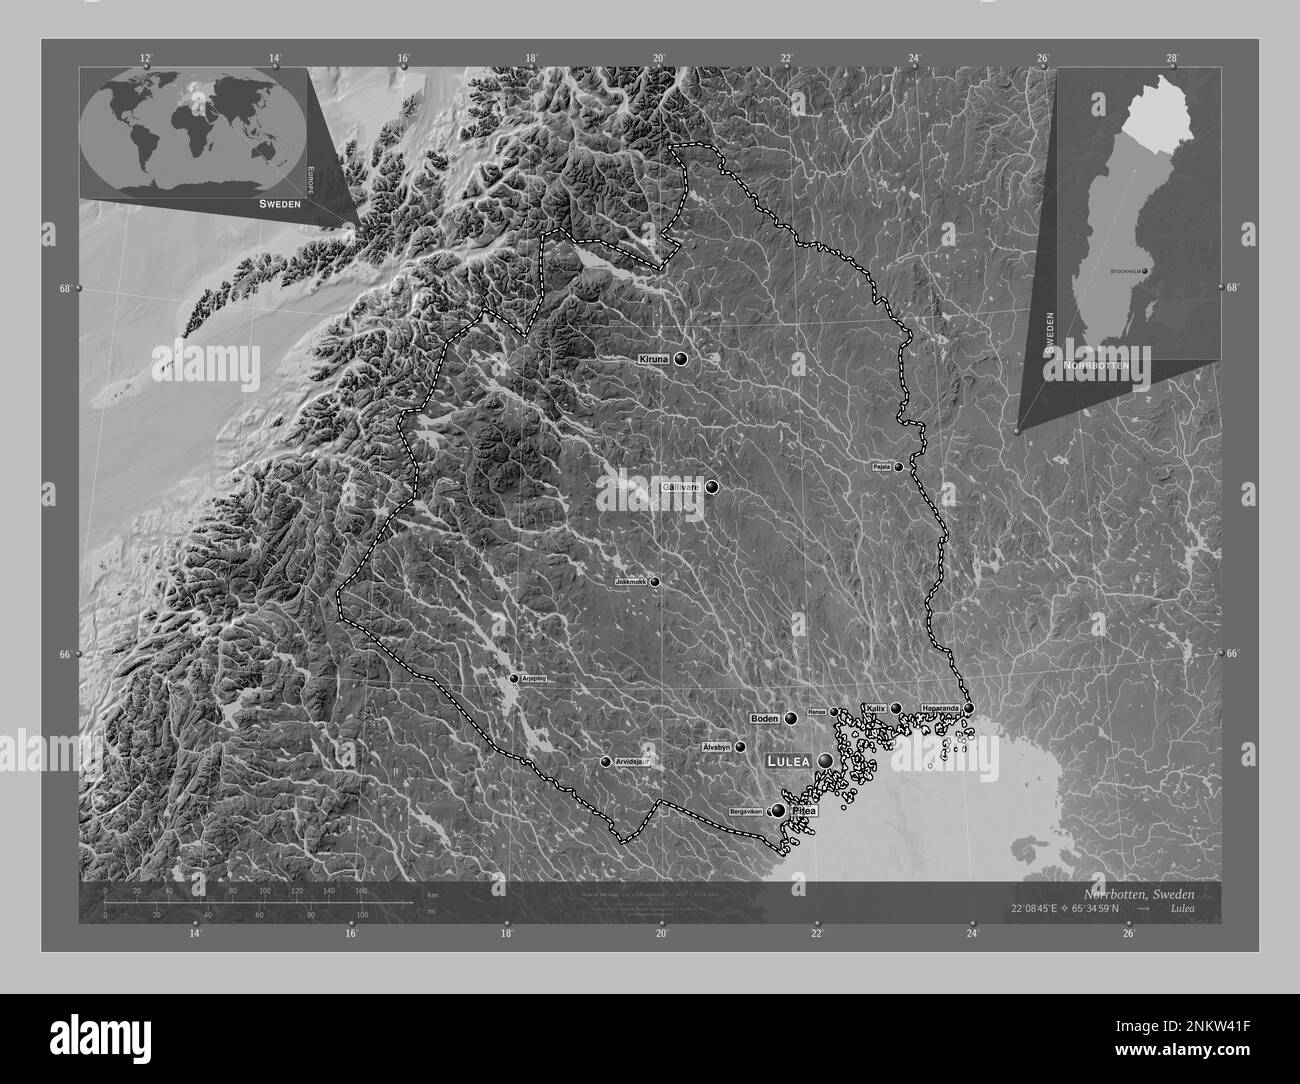 Norrbotten, contea di Svezia. Mappa in scala di grigi con laghi e fiumi. Località e nomi delle principali città della regione. Posizione ausiliaria d'angolo Foto Stock